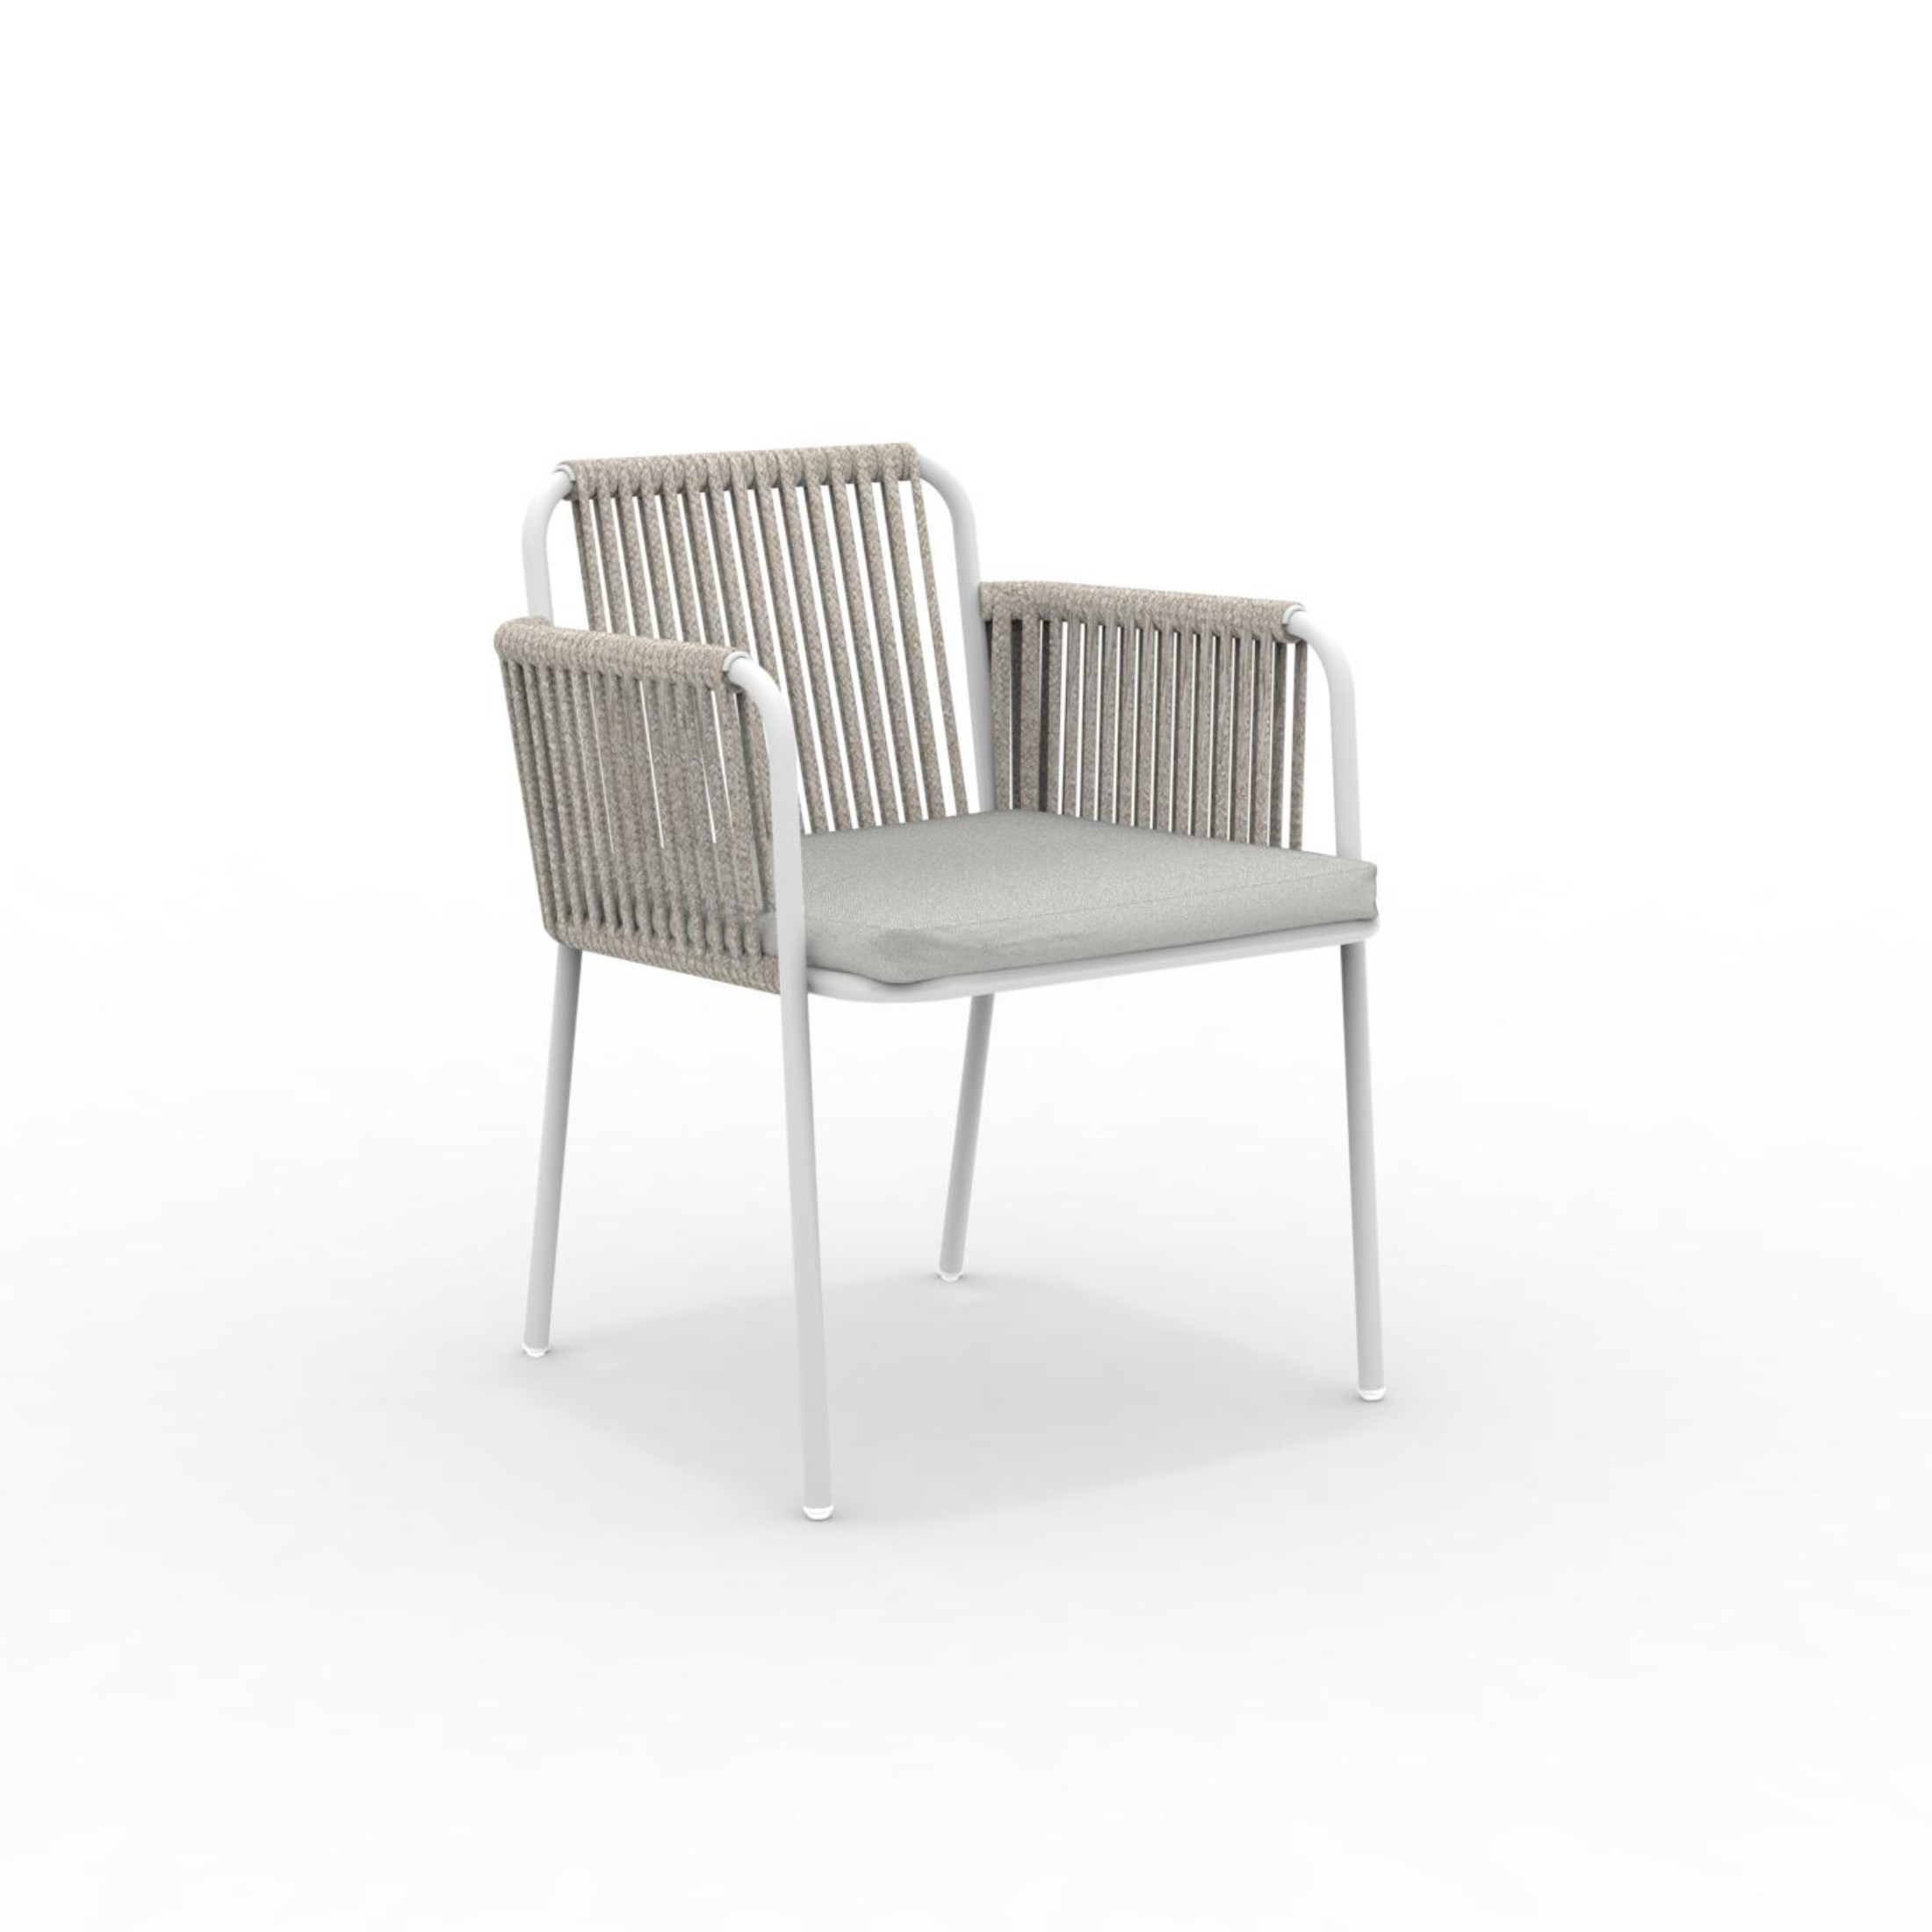 Ensemble fauteuil lounge avec coussin et dossier en corde "Key West" empilable 62x66 cm 85h